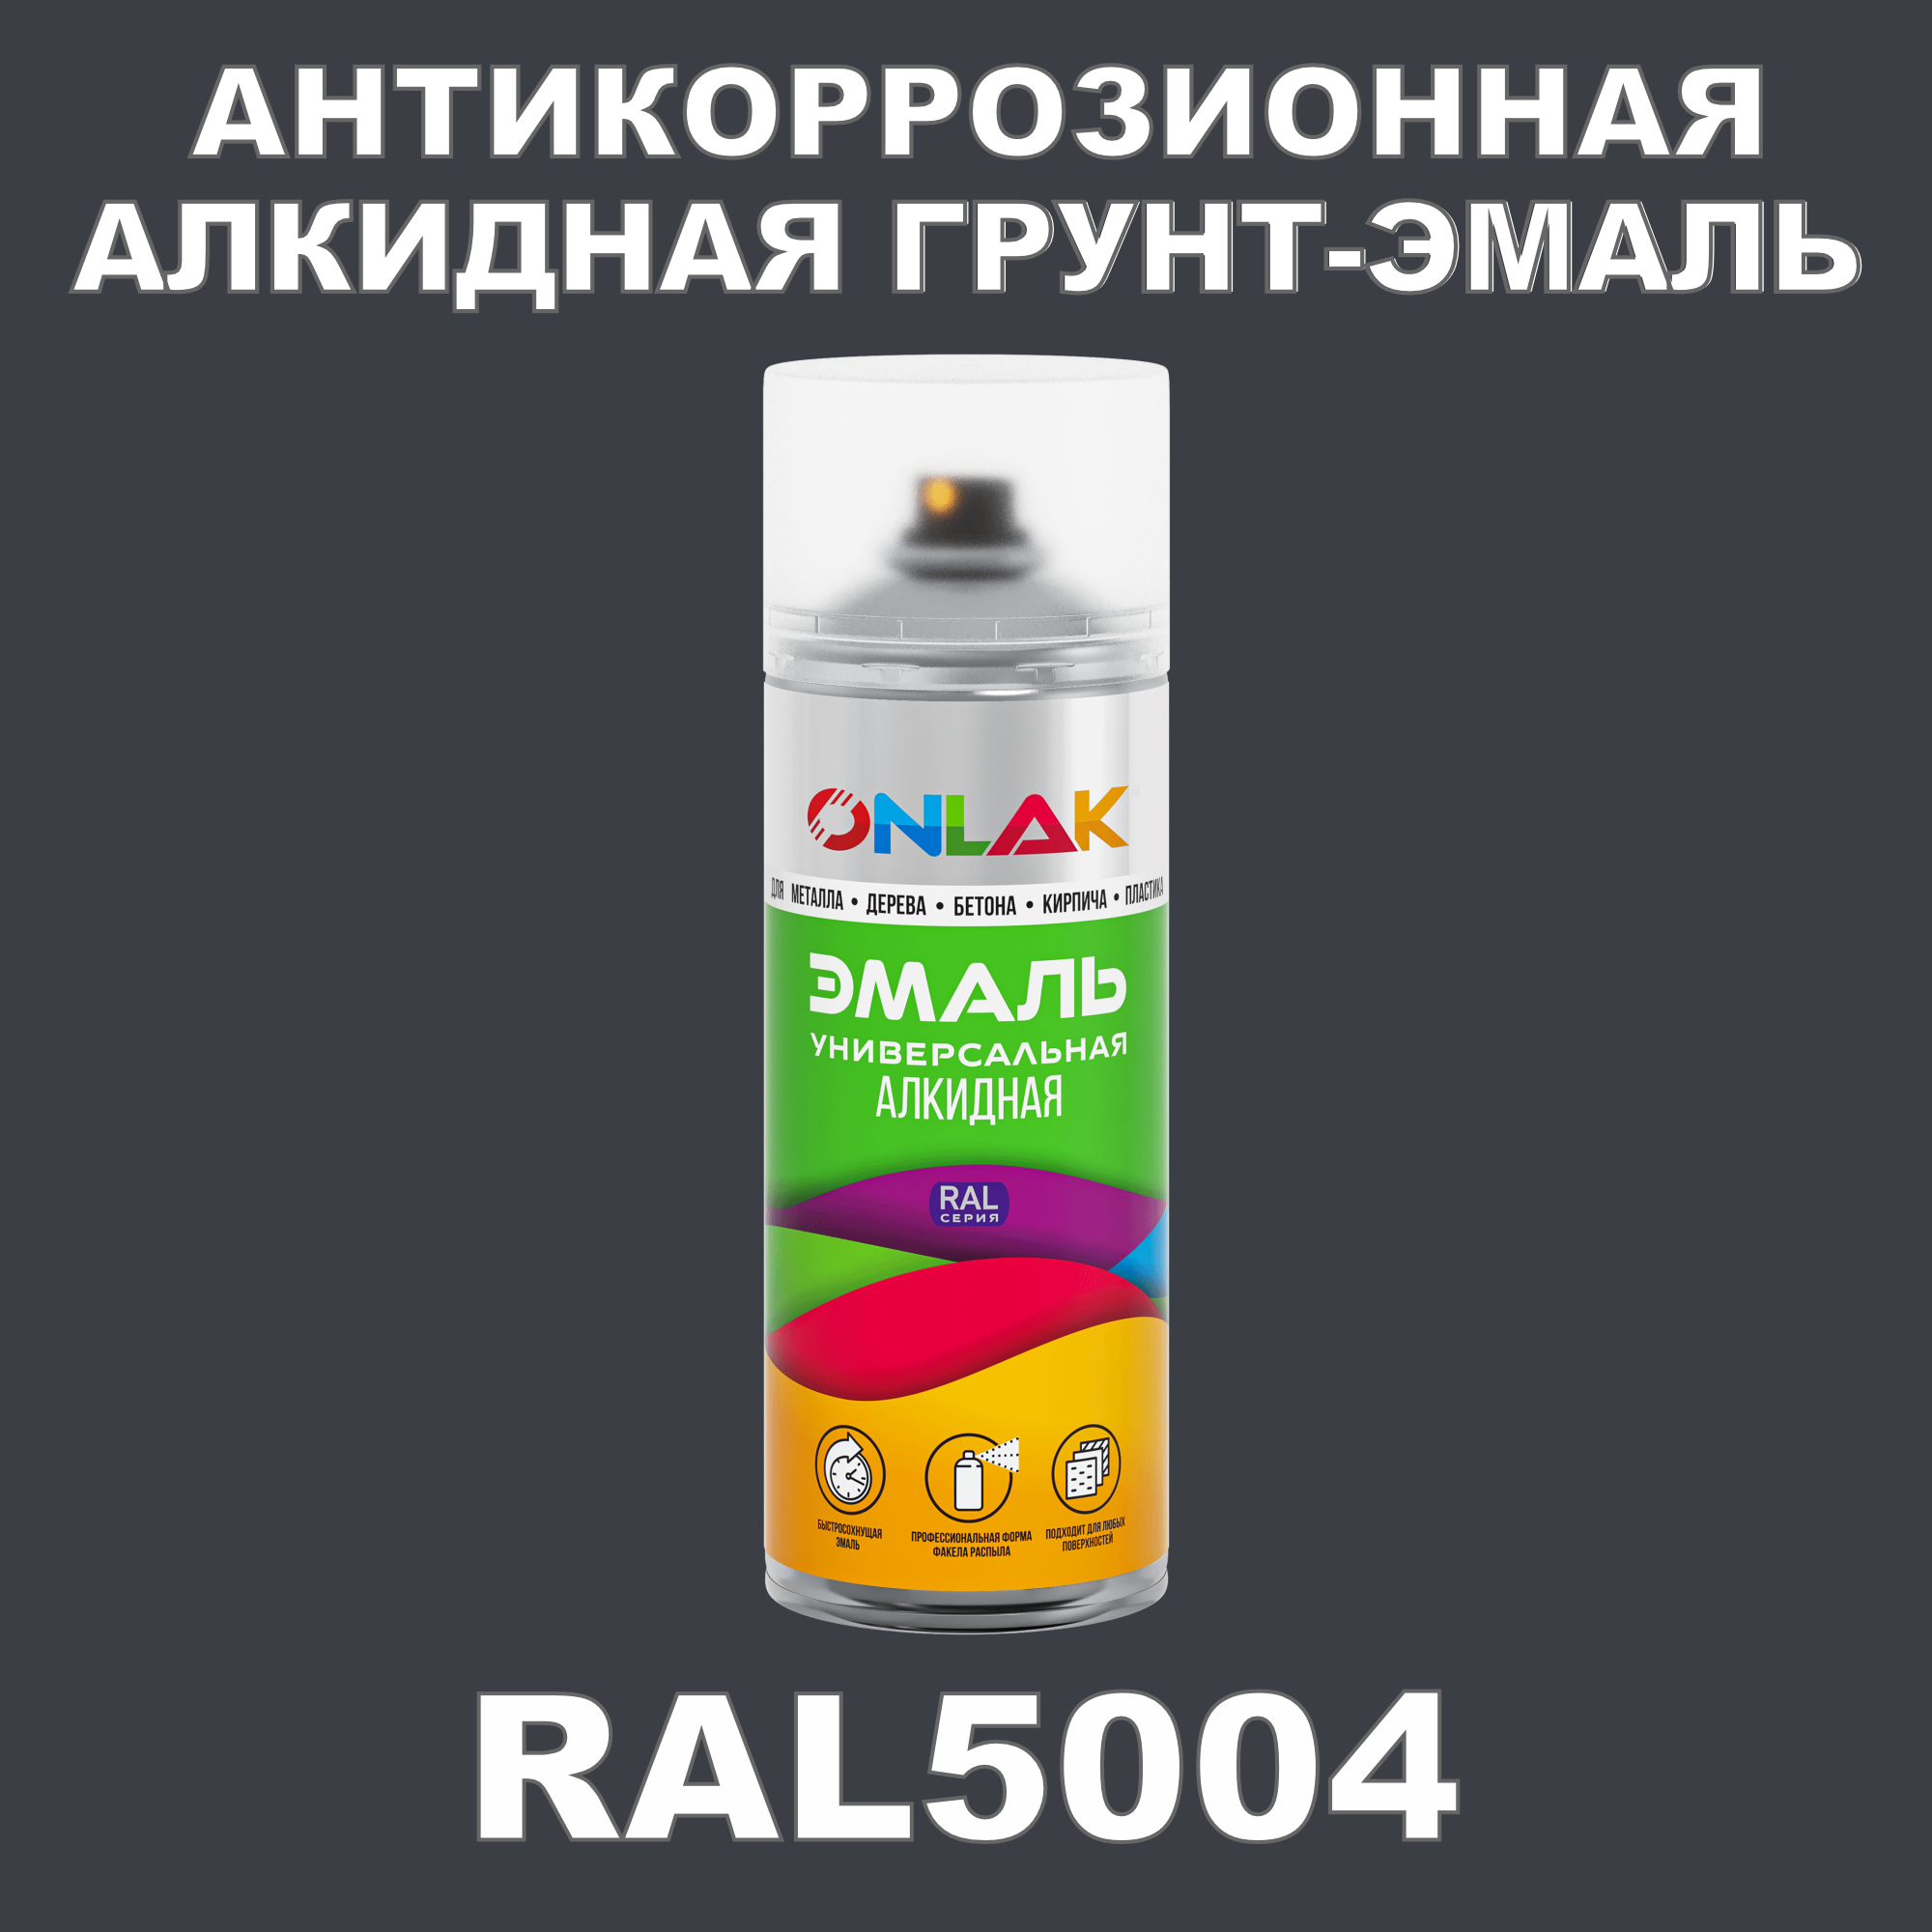 Антикоррозионная грунт-эмаль ONLAK RAL5004 матовая для металла и защиты от ржавчины